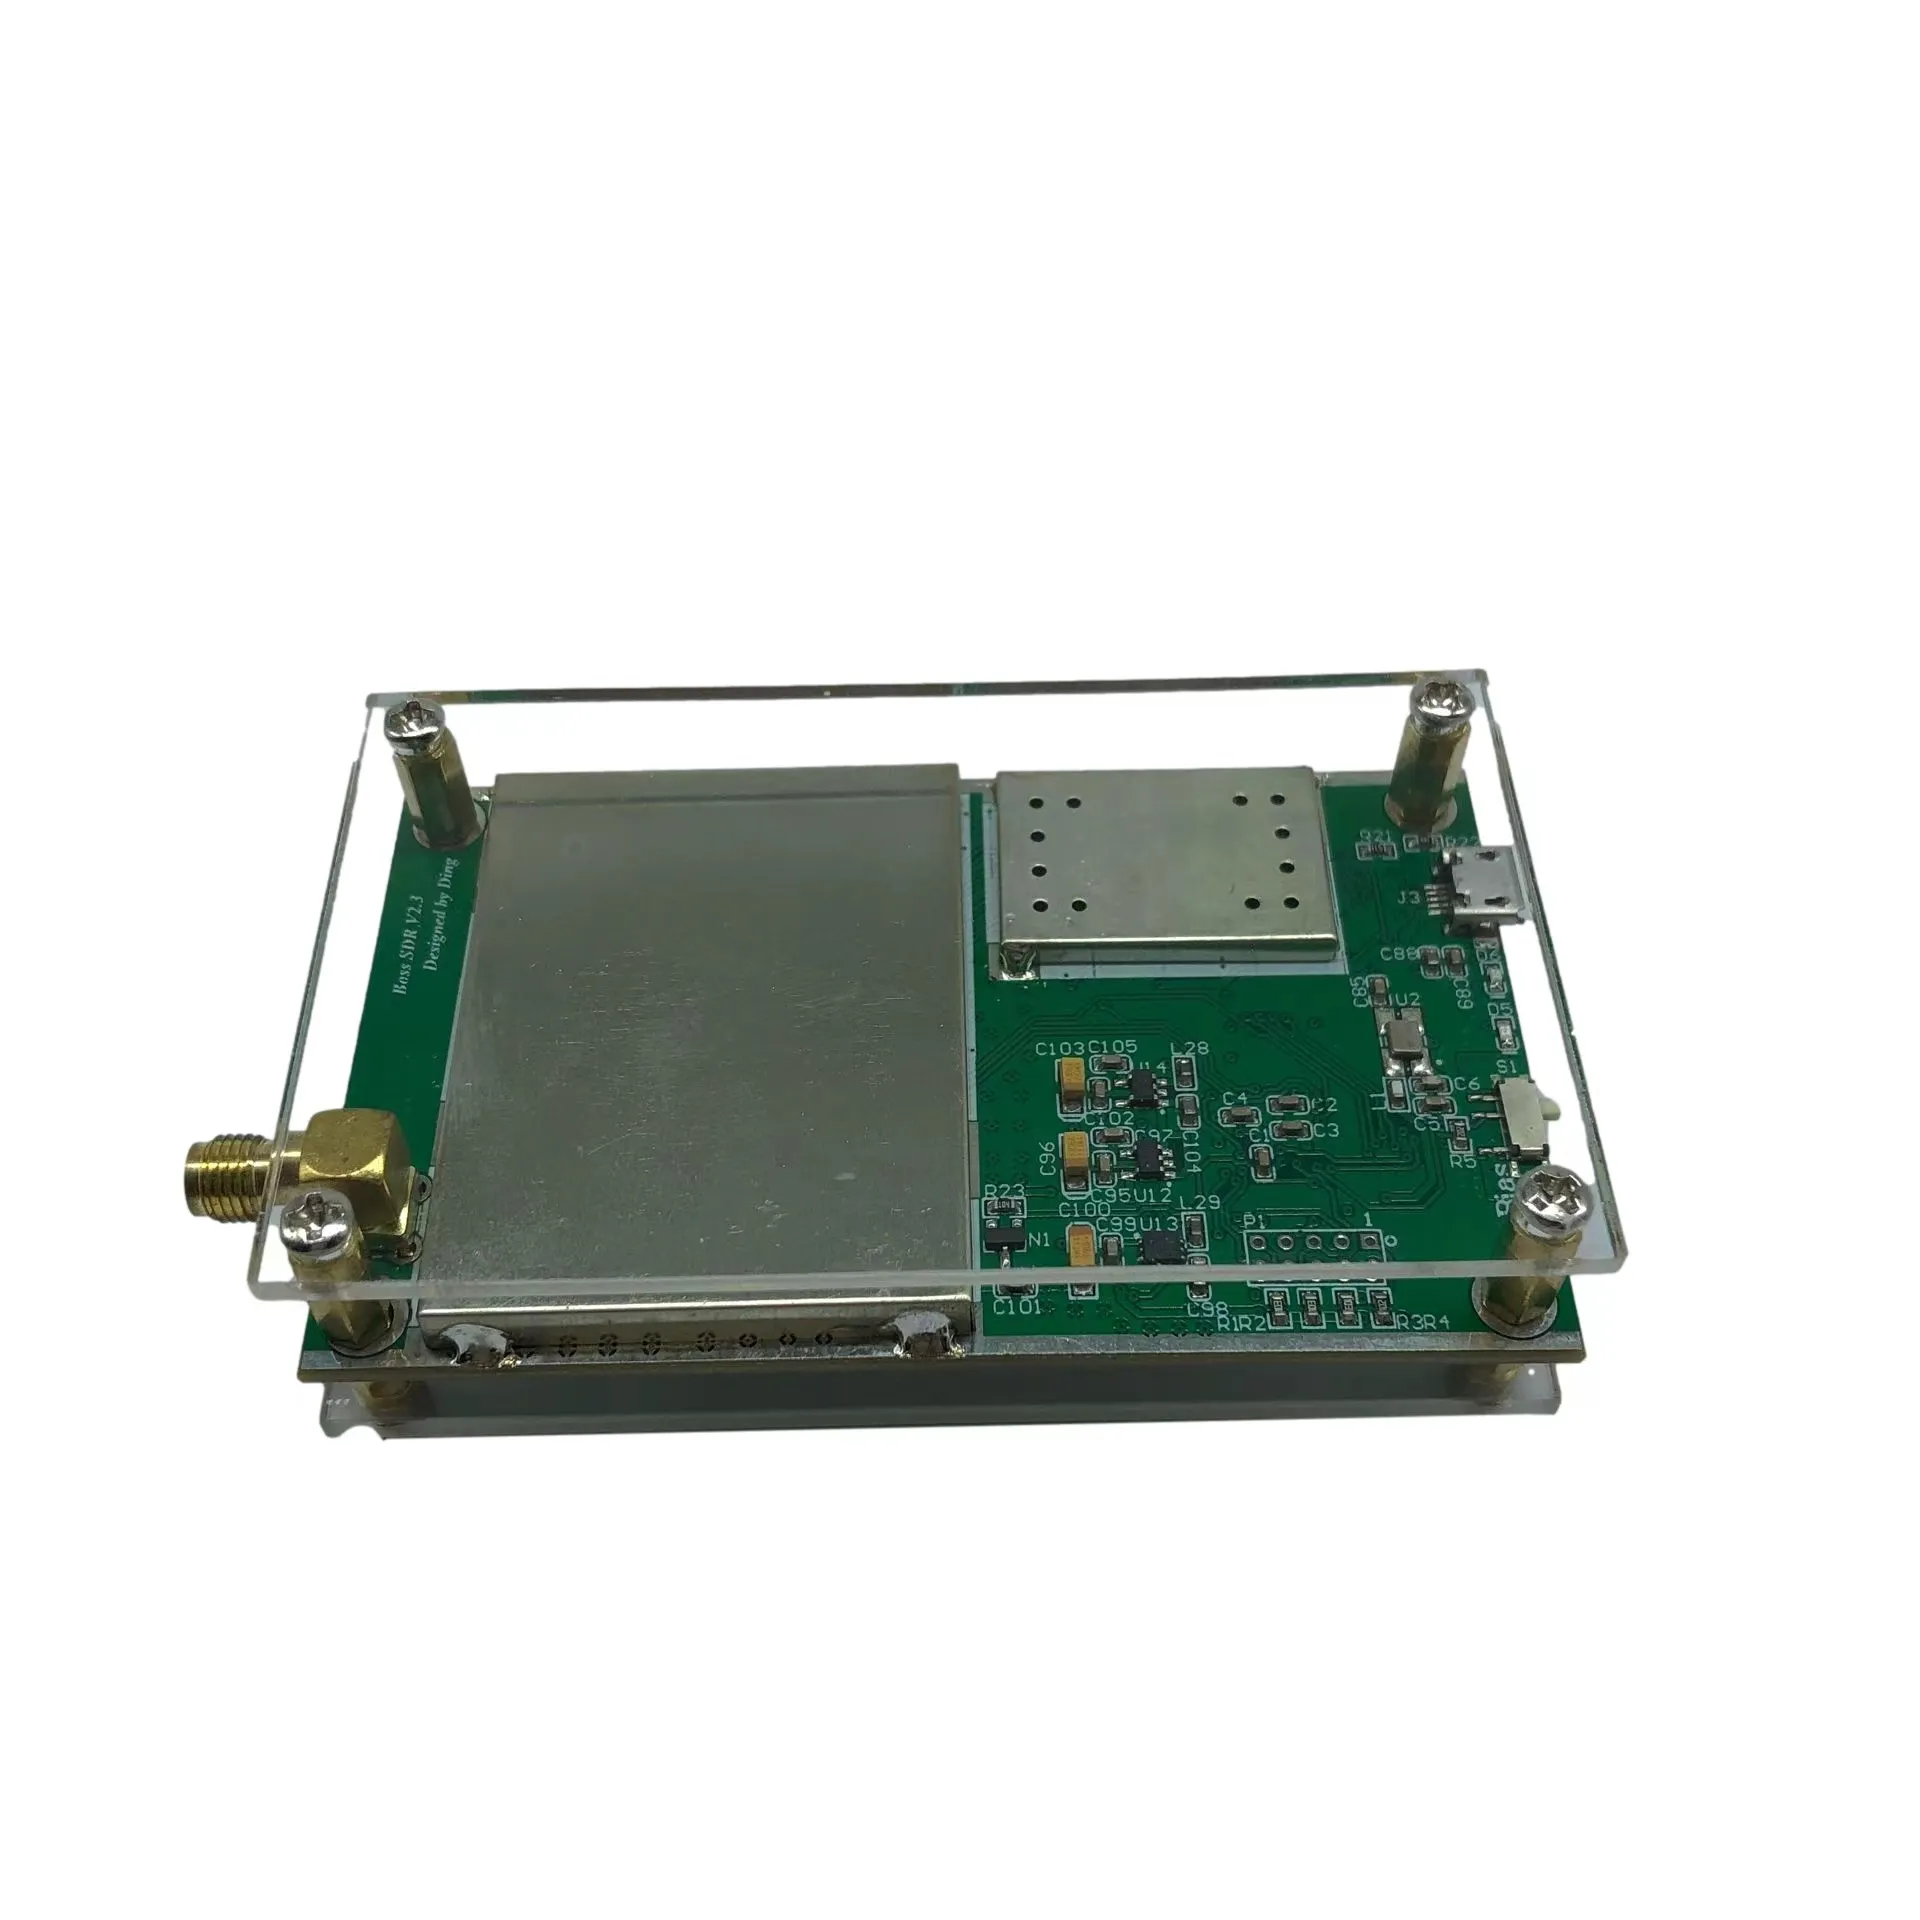 Packbox 10 кГц-2 ГГц широкополосный 14bit программно-определяемое радио SDR приемник RSP1 со встроенной антенной драйвер и программное обеспечение с TCXO 0.5PPM